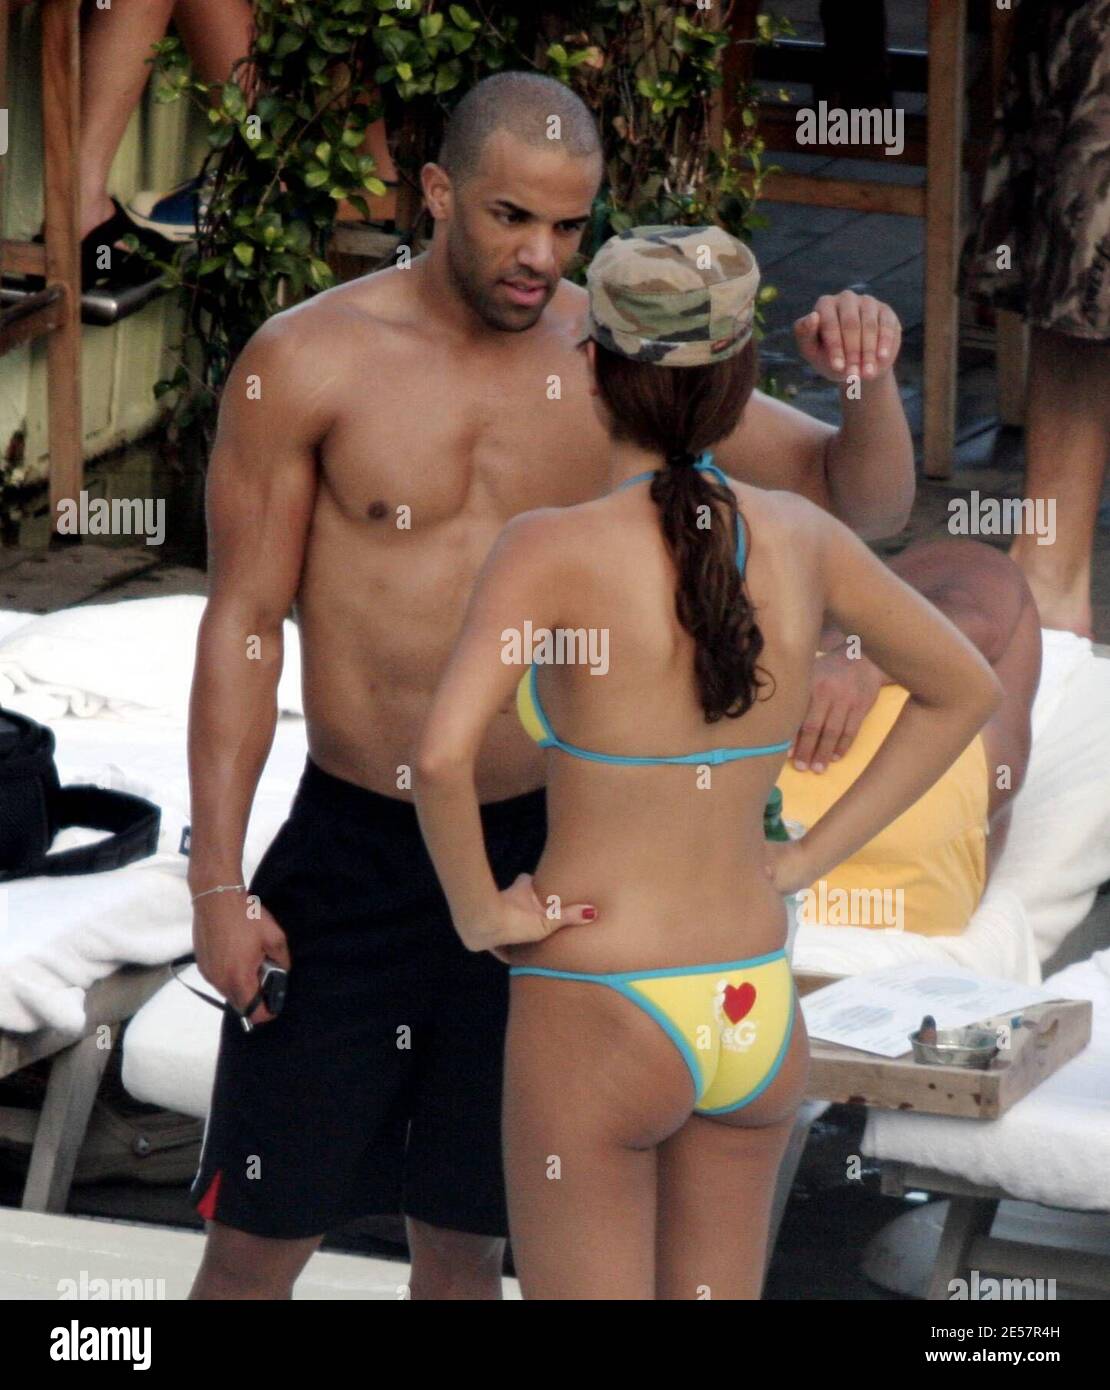 Exclusif !! Le chanteur britannique Craig David montre son nouveau corps de buff suspendu côté piscine à Miami Beach, FL. 01/01/07 [[ral]] Banque D'Images